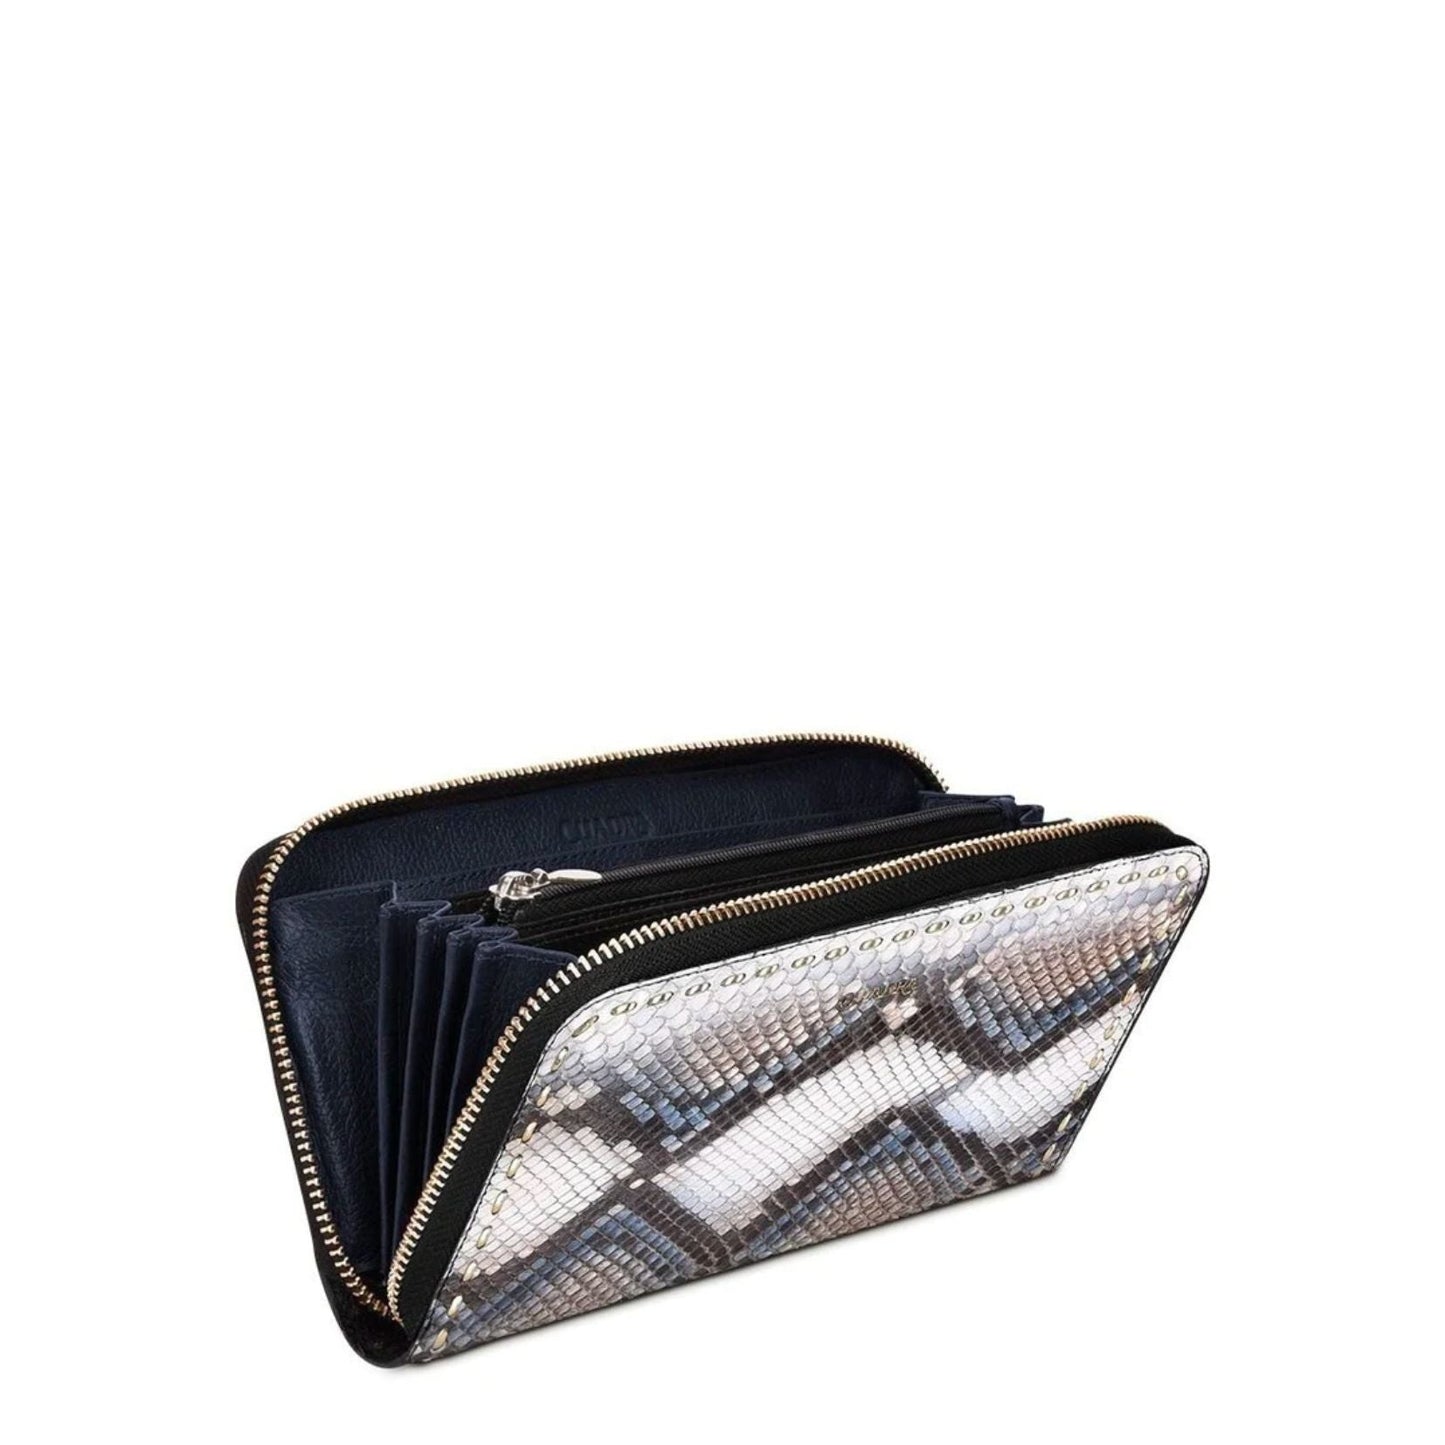 BD211PI - Cuadra blue fashion python leather wallet clutch for women-CUADRA-Kuet-Cuadra-Boots